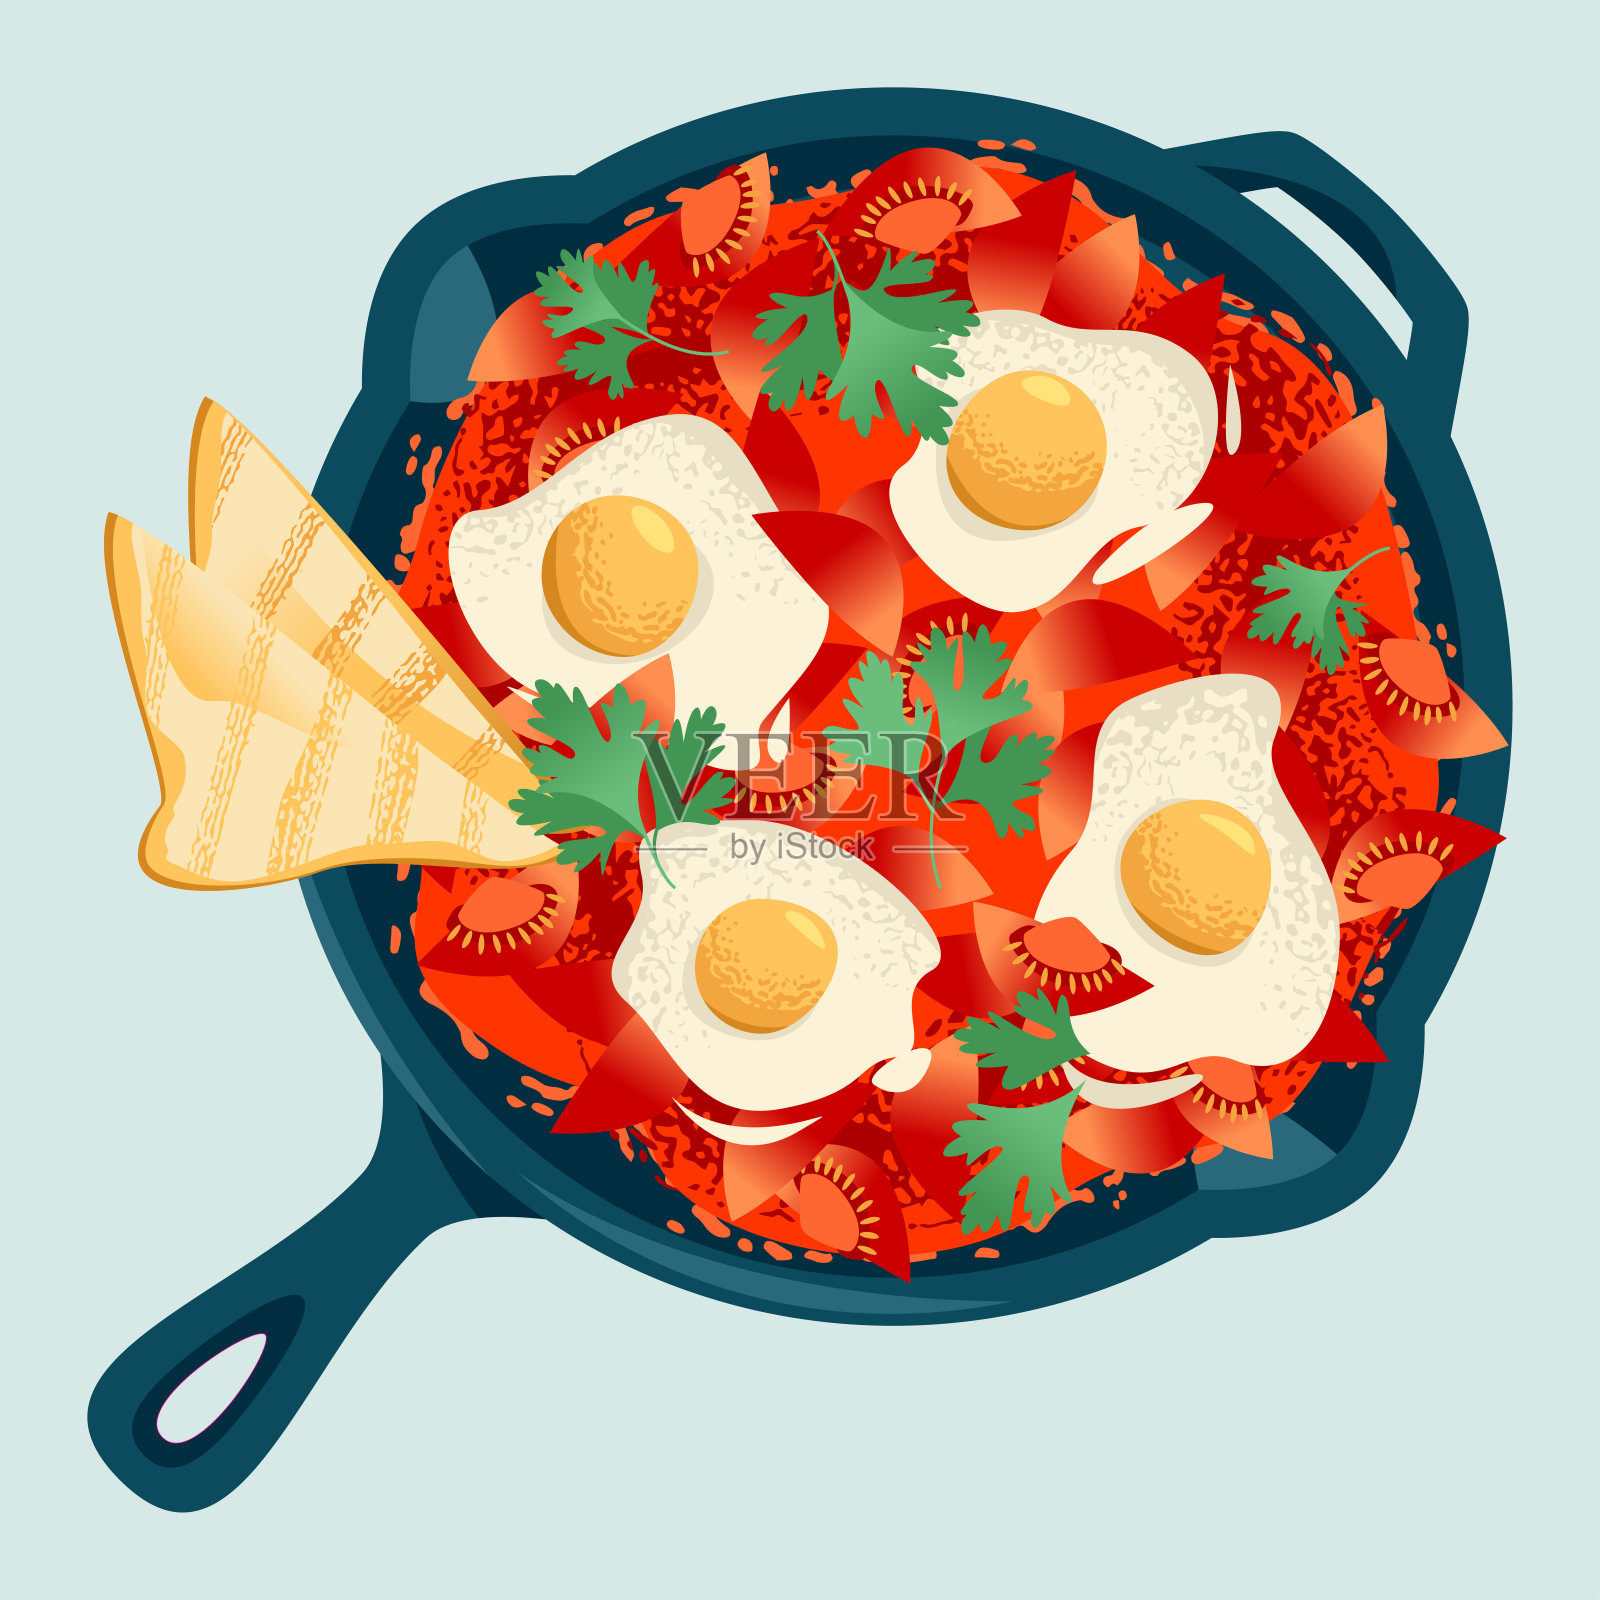 沙克舒卡，一种用番茄沙司煮鸡蛋做成的菜肴，用铸铁锅和面包一起吃。插画图片素材